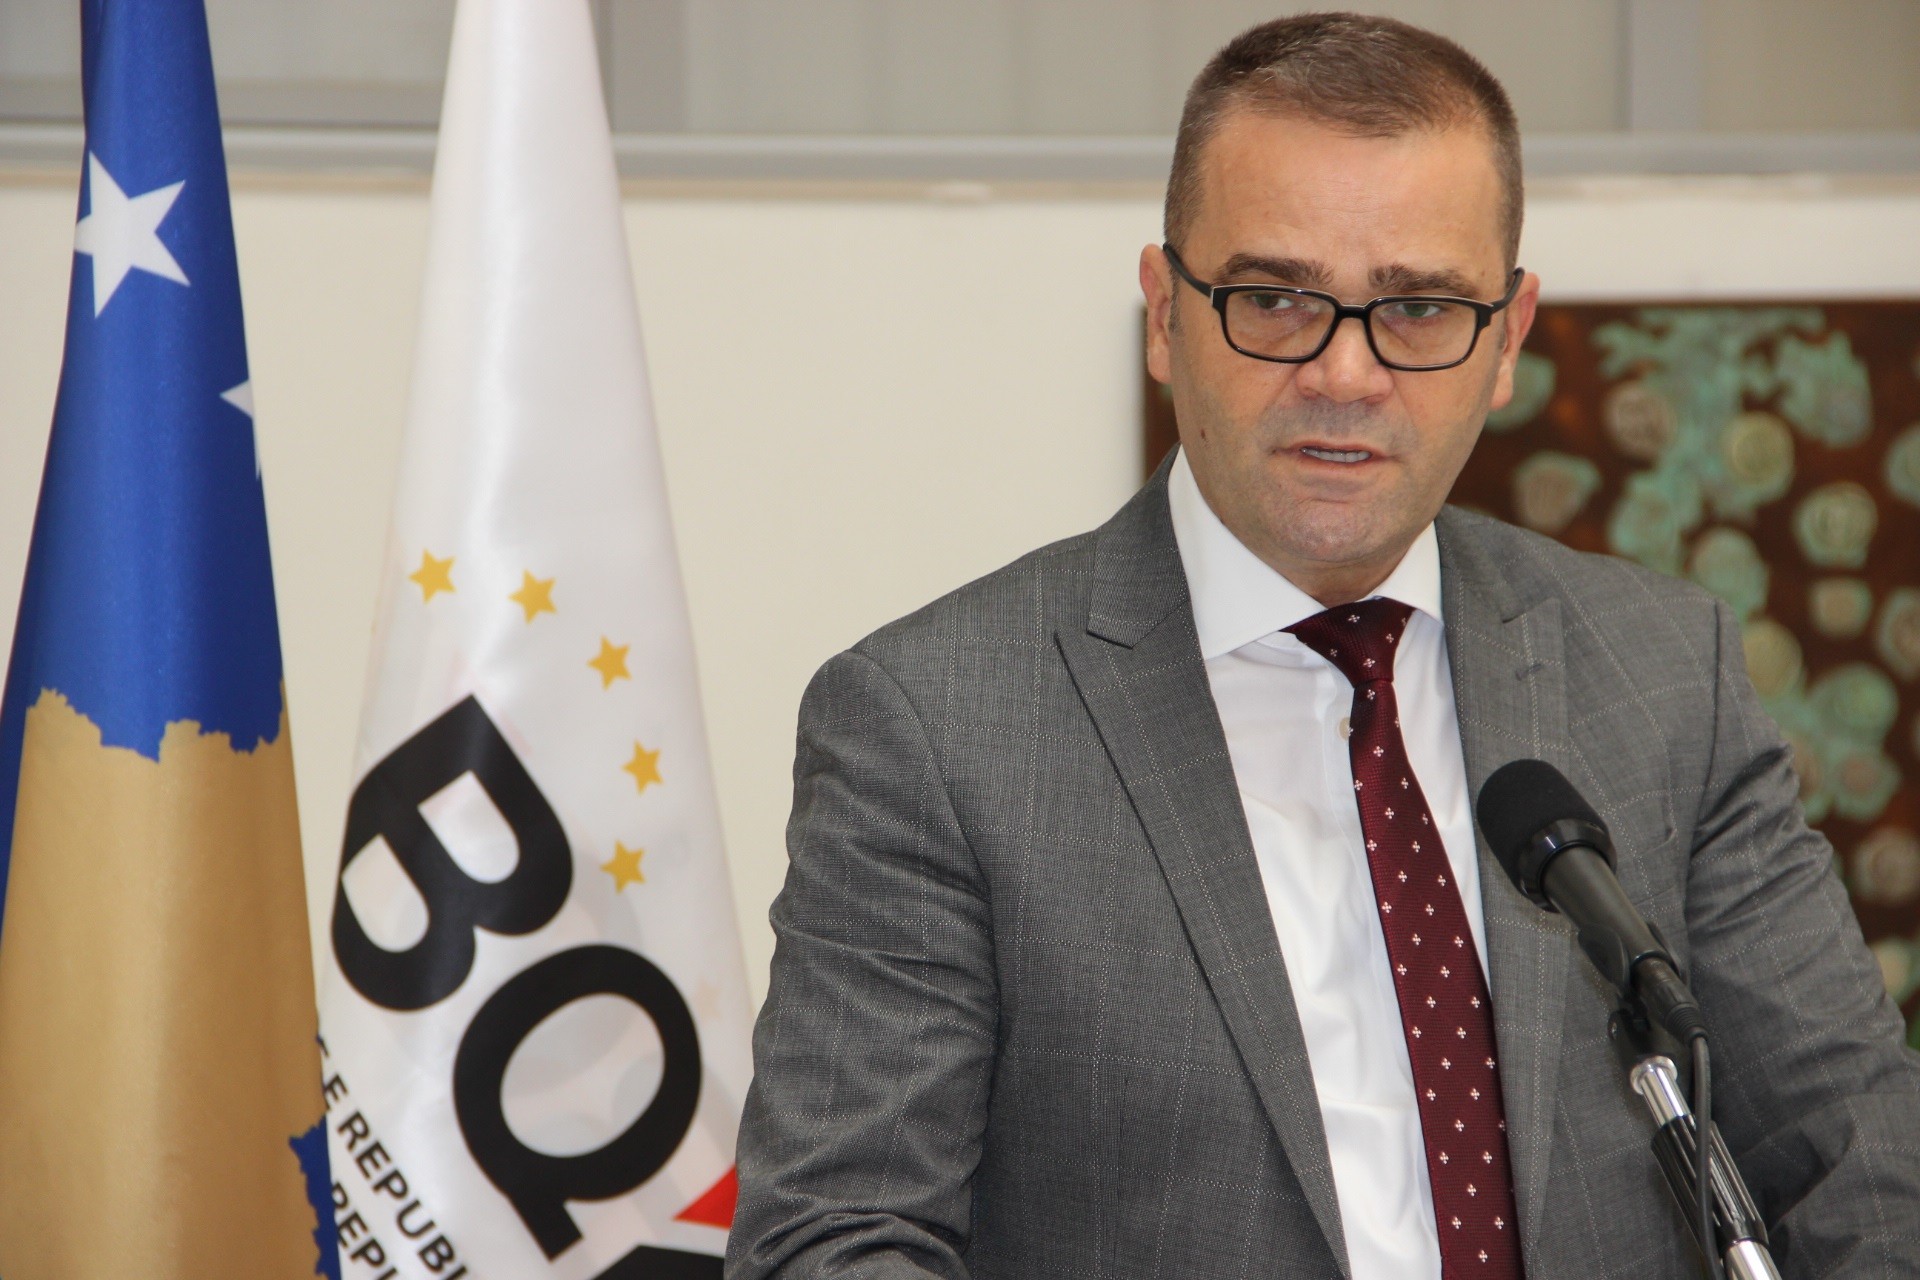 Guvernatori Mehmeti vlerëson lart përpjekjet bankave në mbështetje të ekonomisë